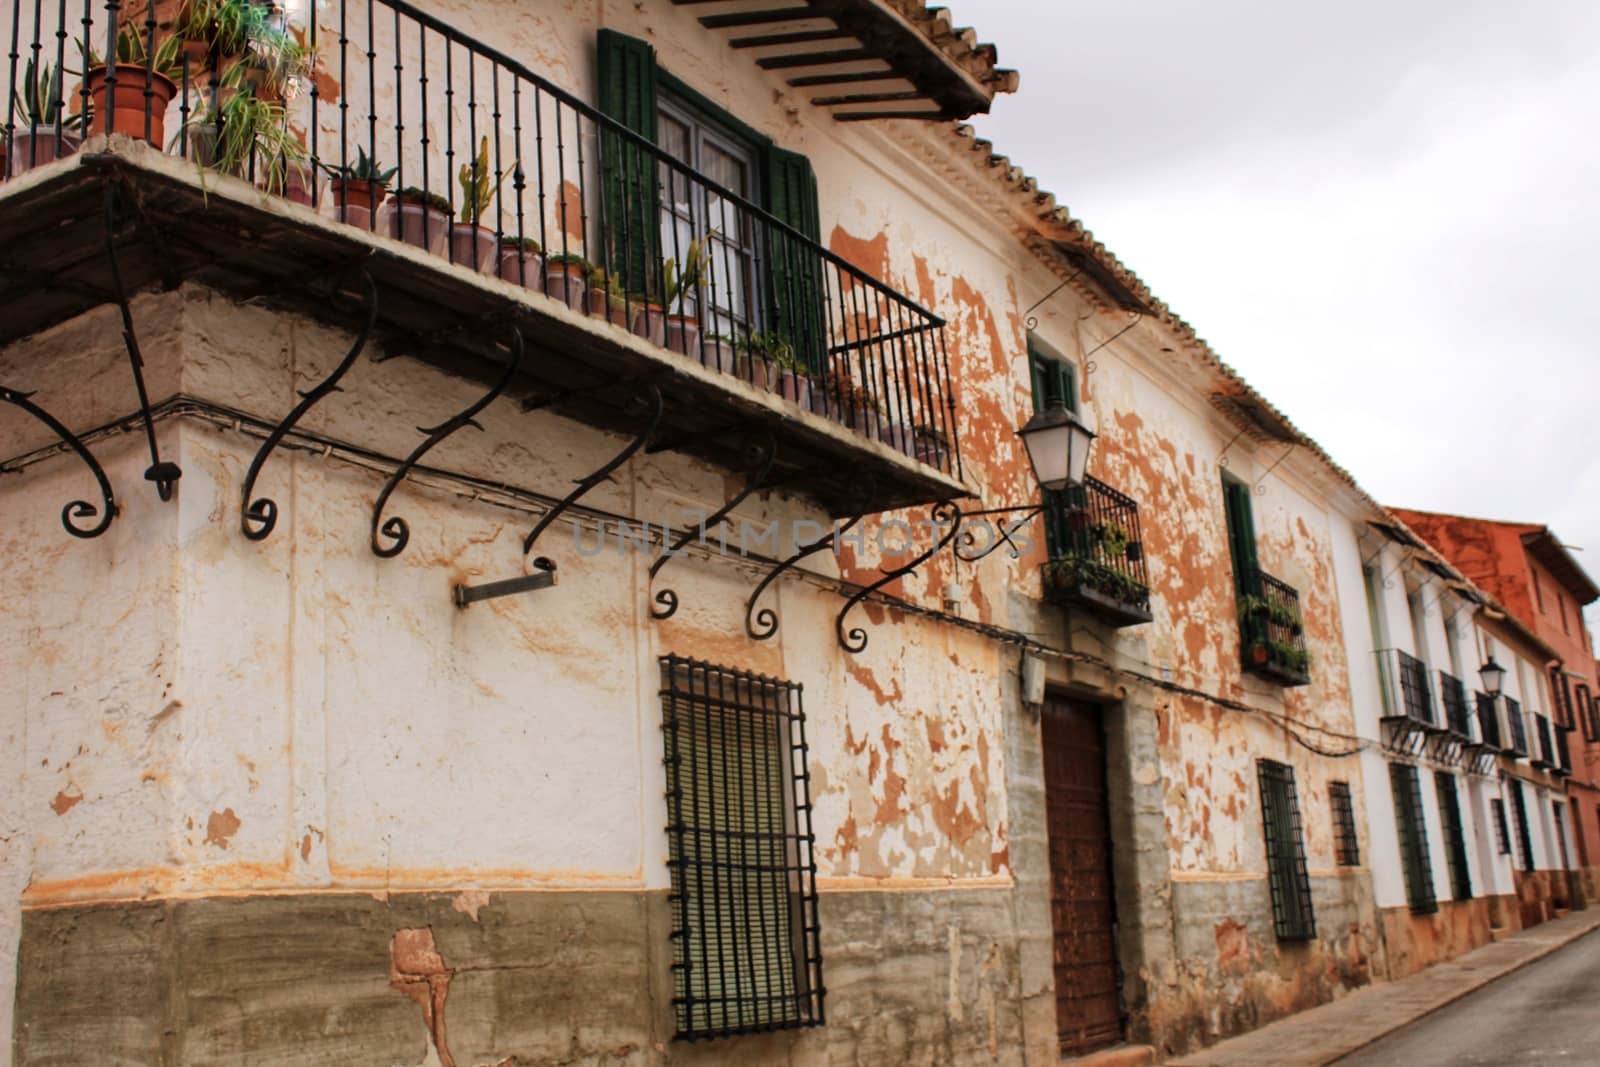 Old facades, balconies and vintage lanterns in Villanueva de los Infantes, Spain by soniabonet